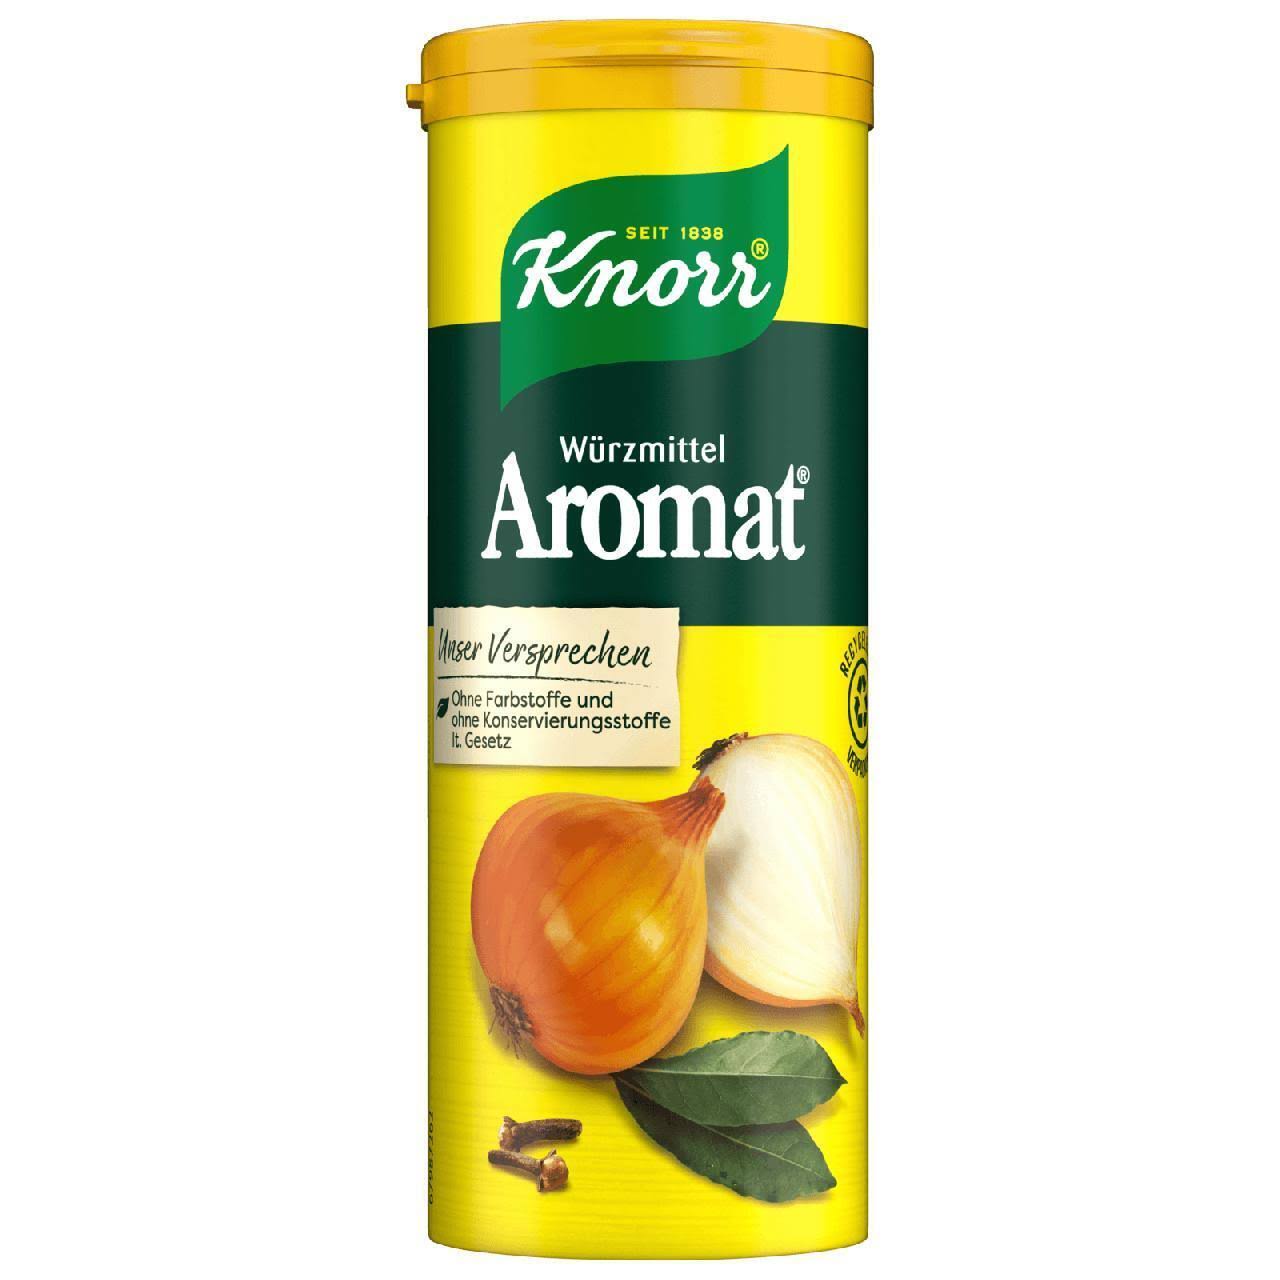 Knorr Aromat Universal Seasoning